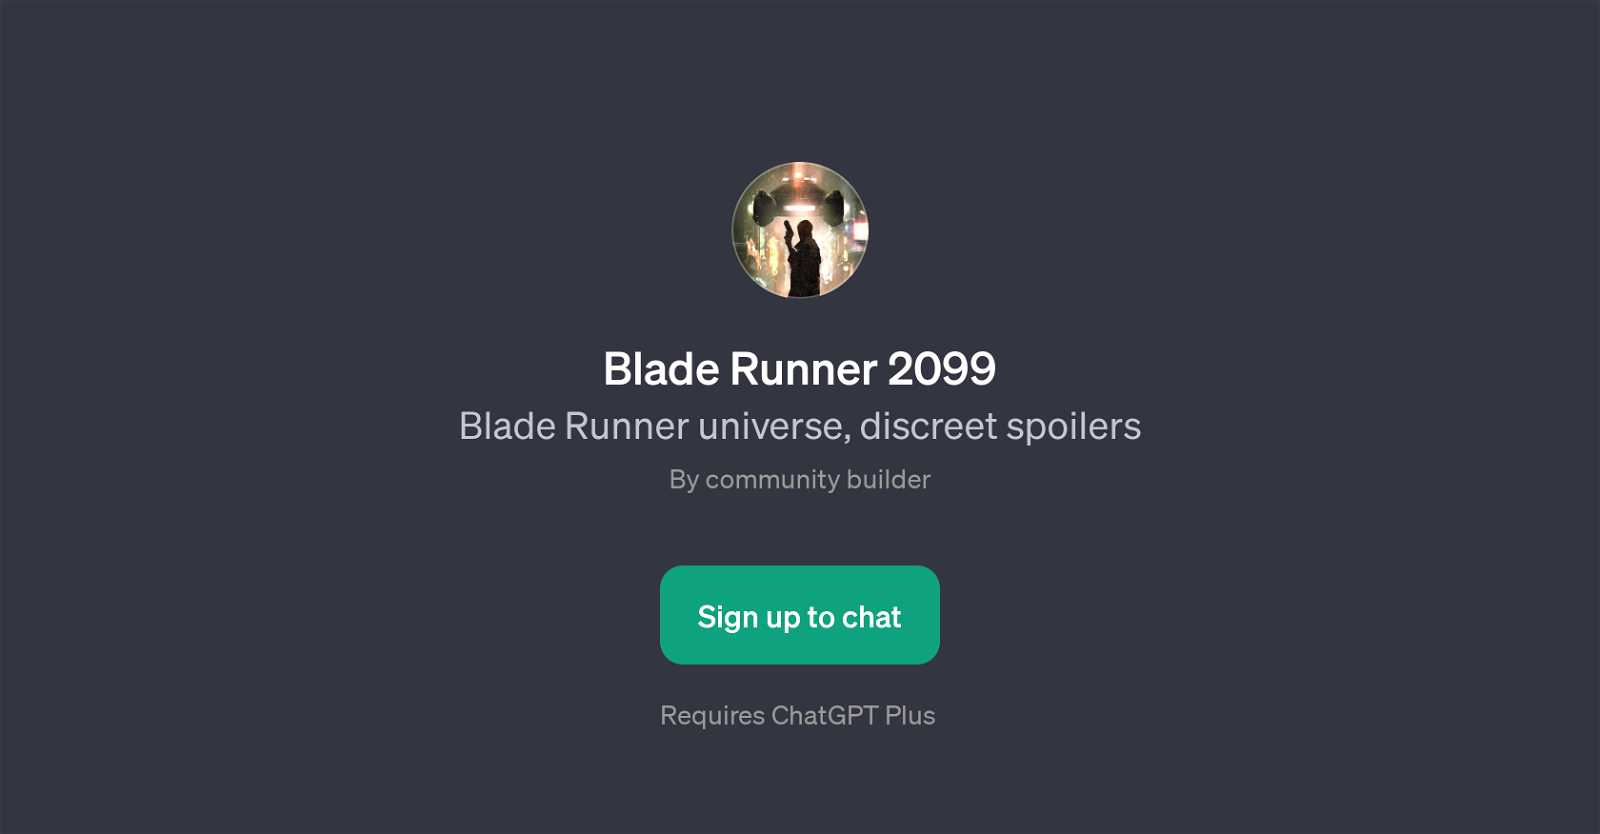 Blade Runner 2099 website